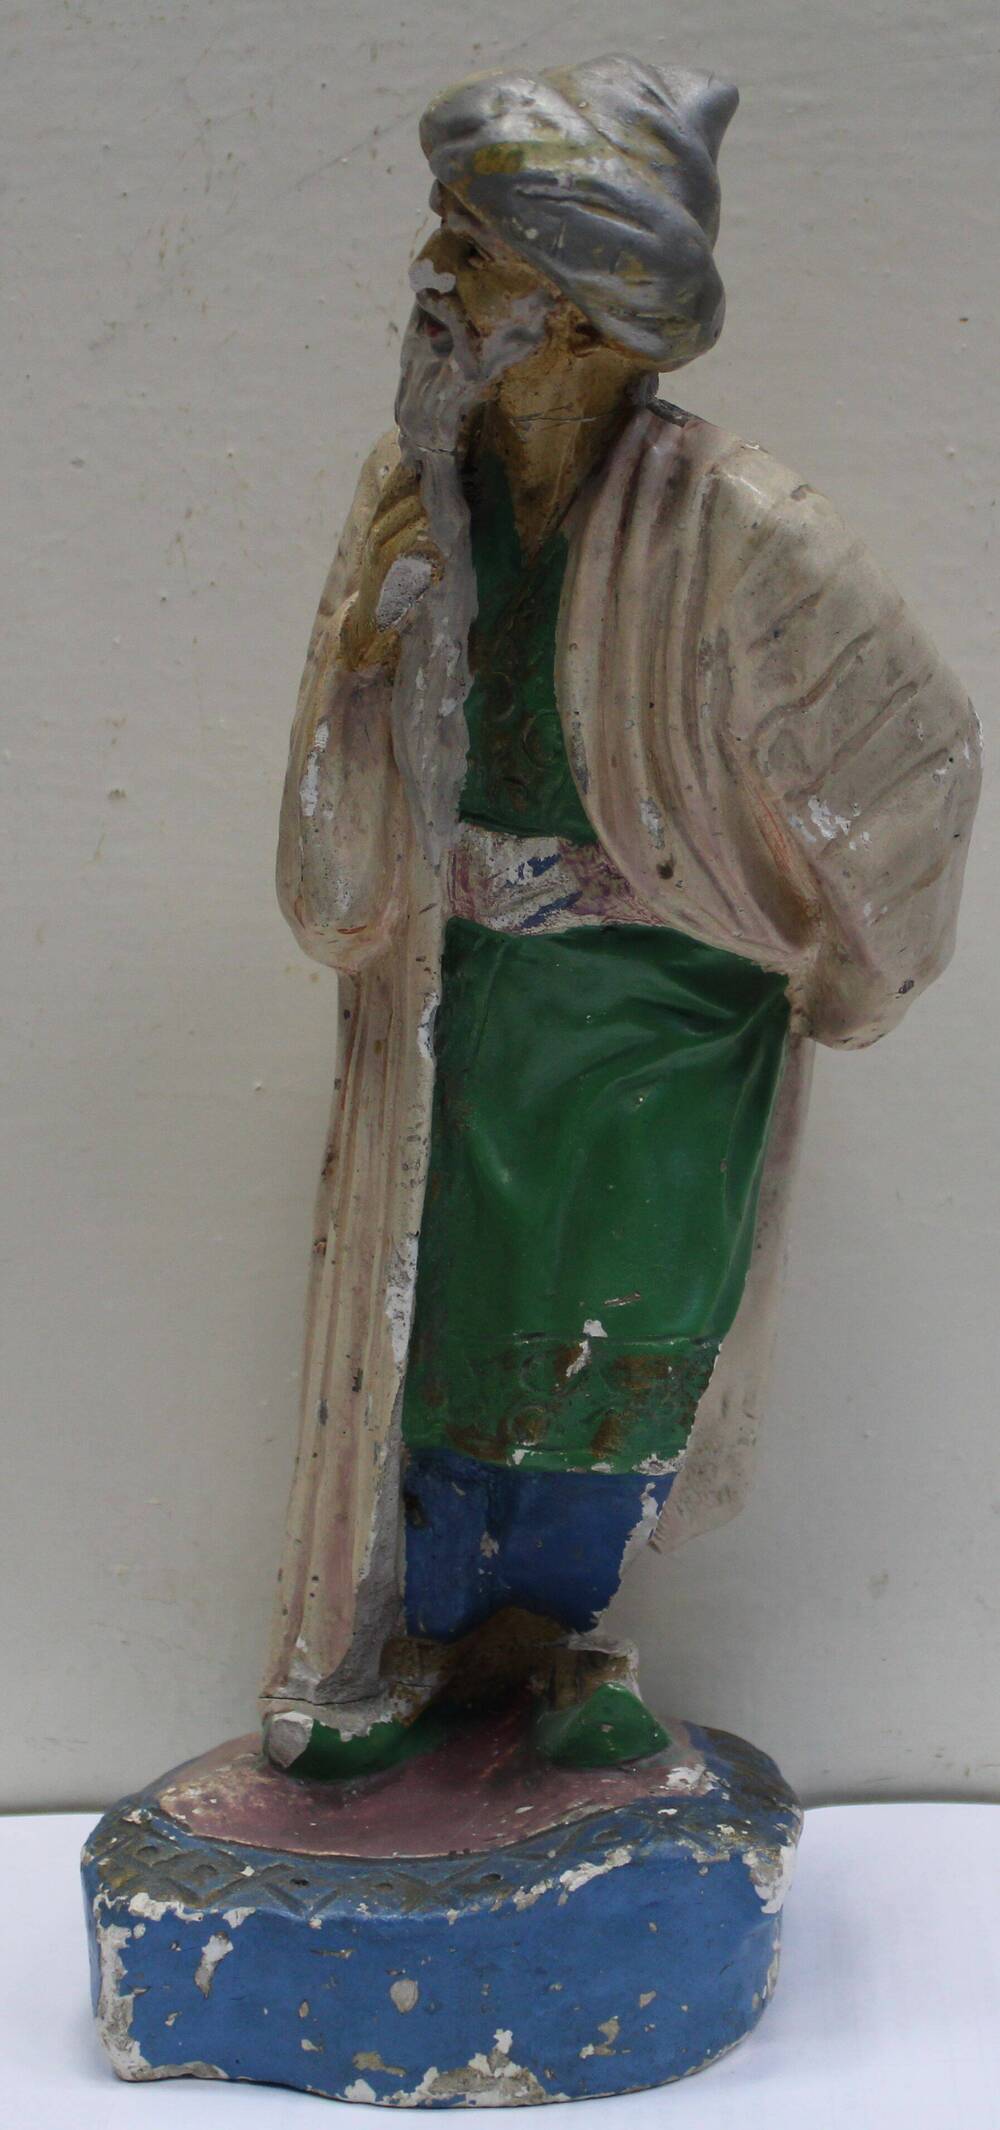 Скульптура настольная  «Старик Хоттабыч», 20 век.